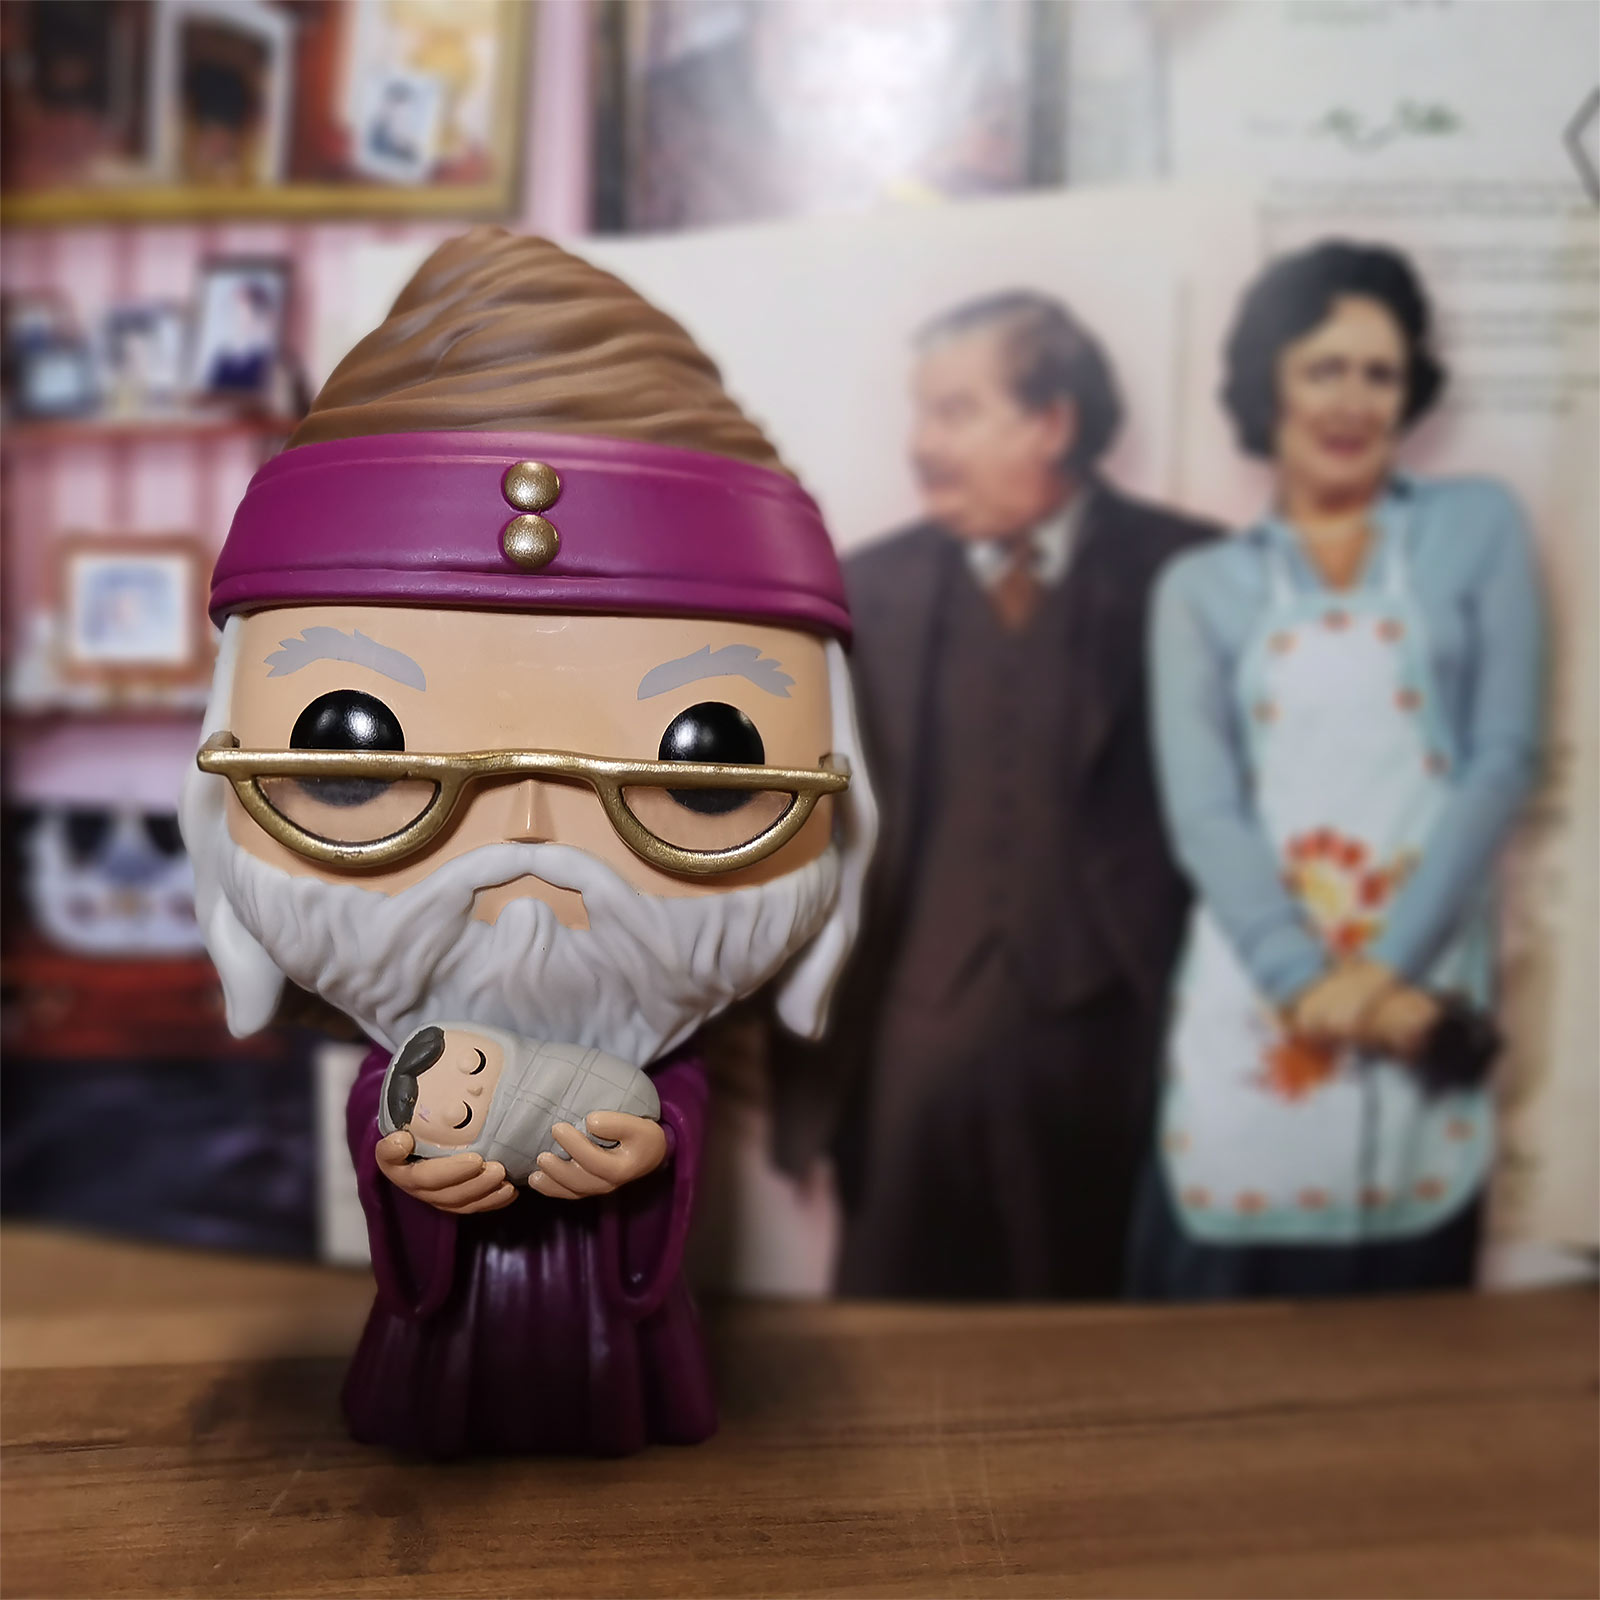 Harry Potter - Dumbledore with Baby Harry Funko Pop Figure